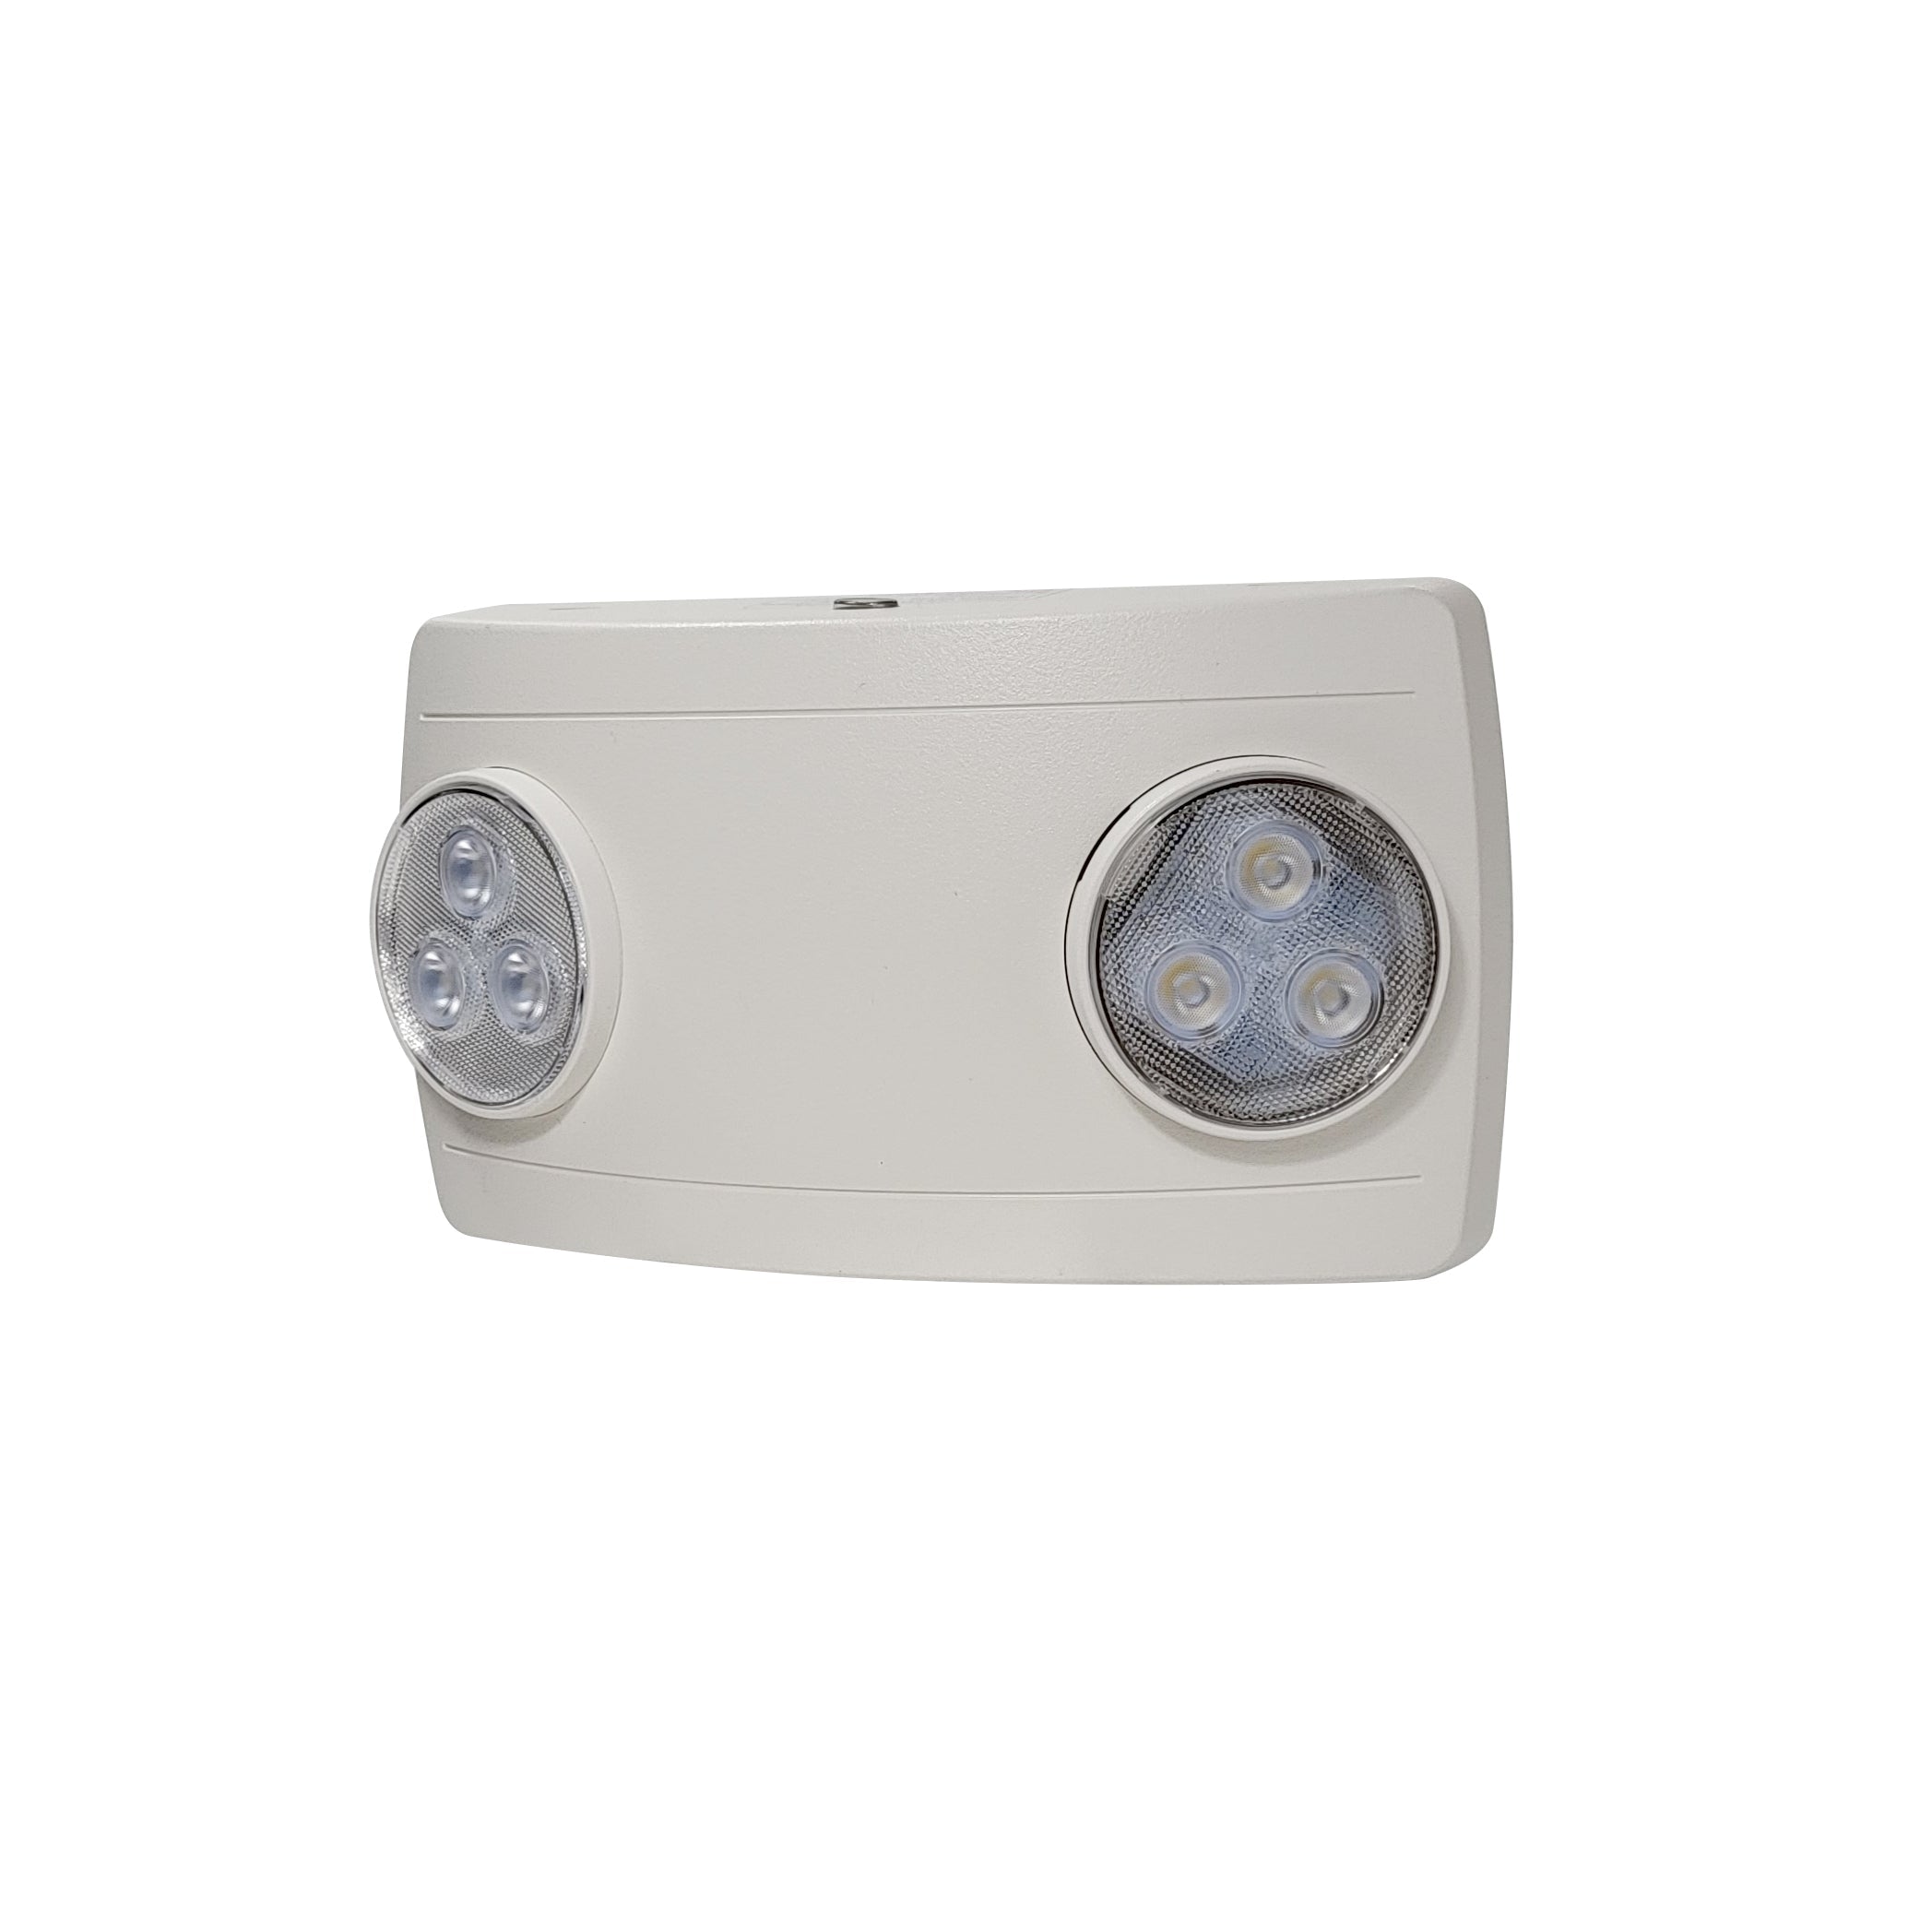 Nora Lighting NE-612LEDW - Exit / Emergency - Compact Dual Head LED Emergency Light, 120/277V, White